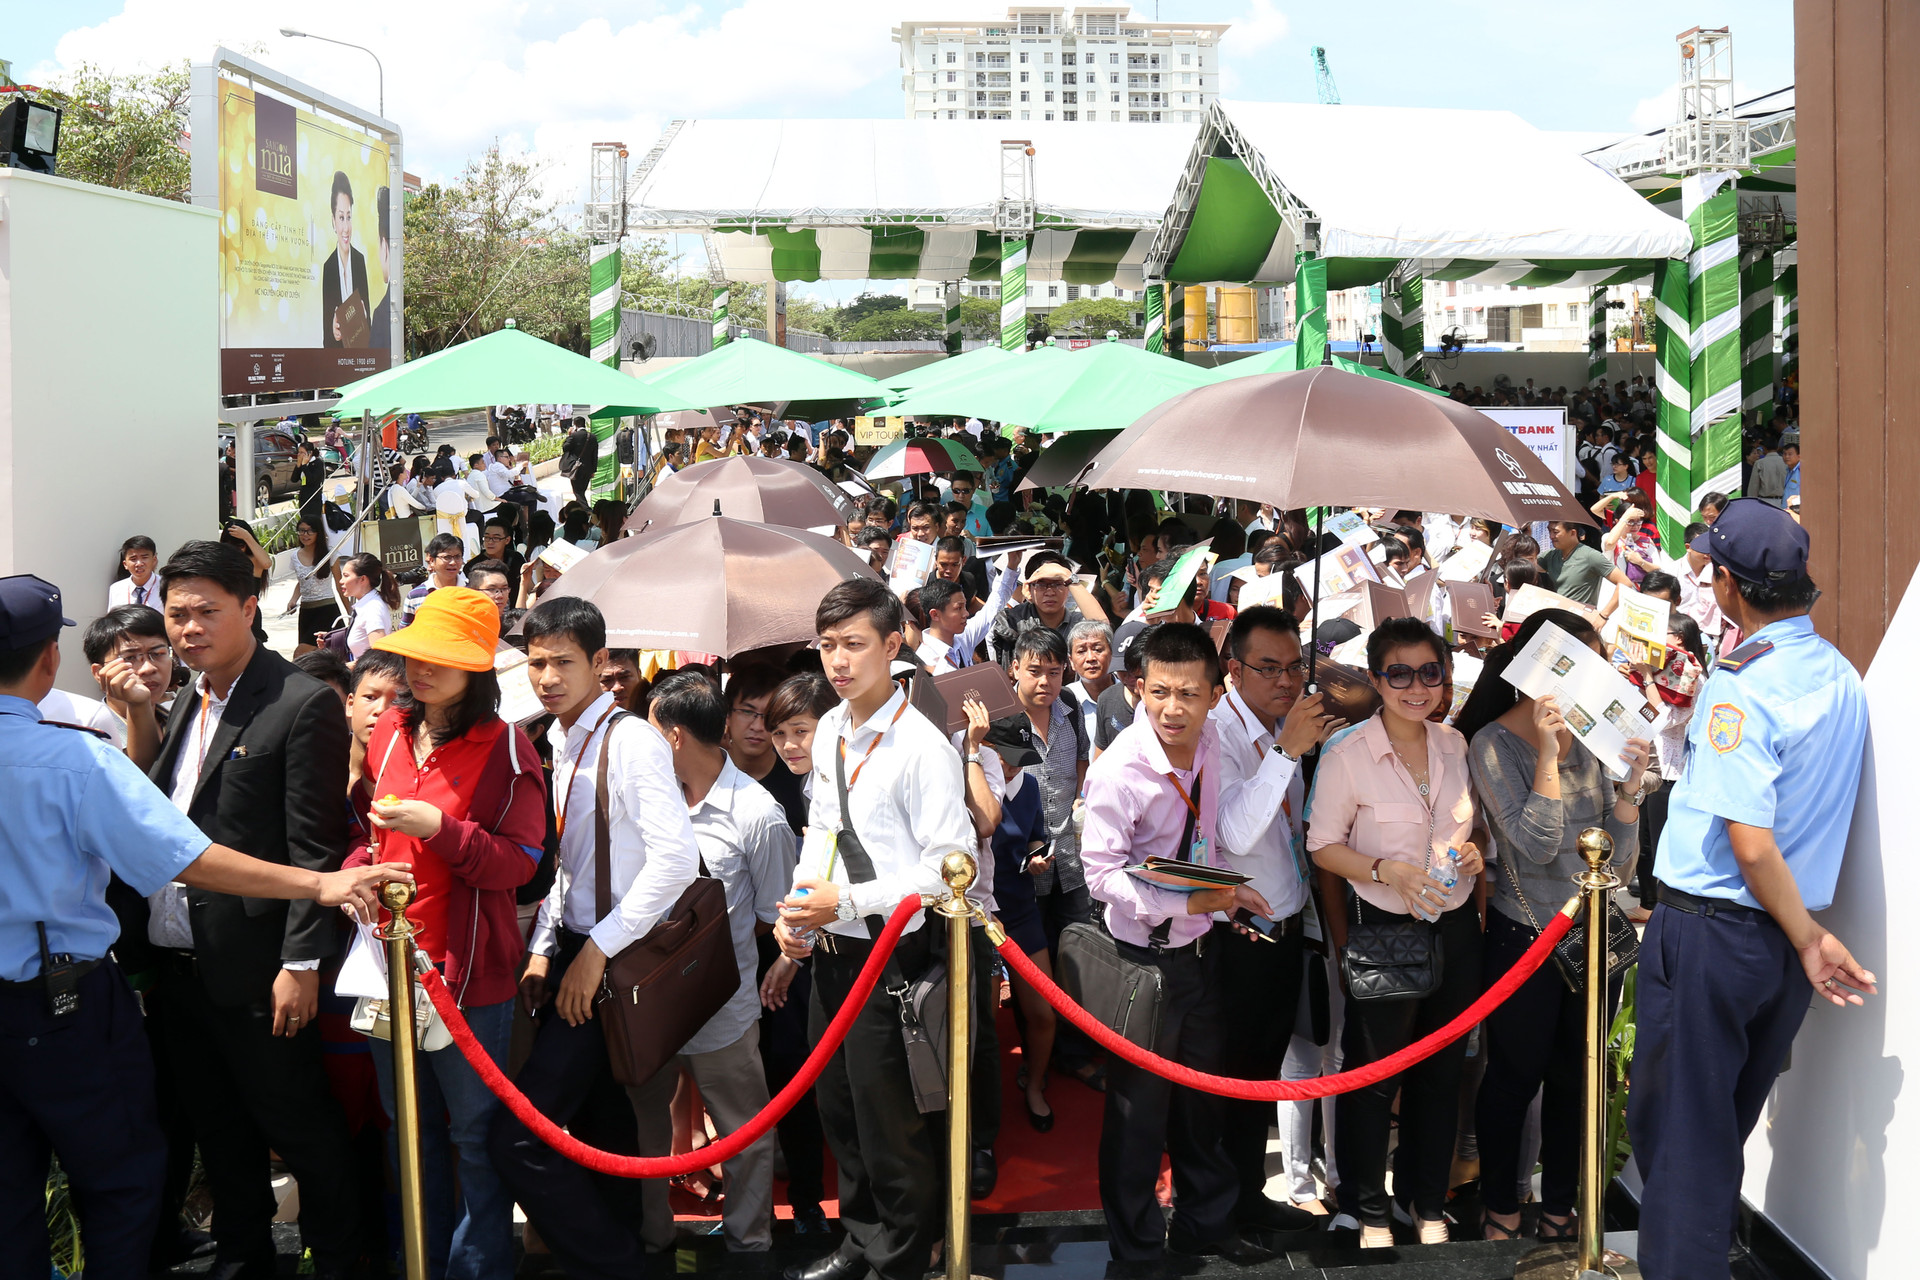 Hung Thinh Corp tổ chức Lễ Công bố và  khai trương căn hộ mẫu SaigonMia